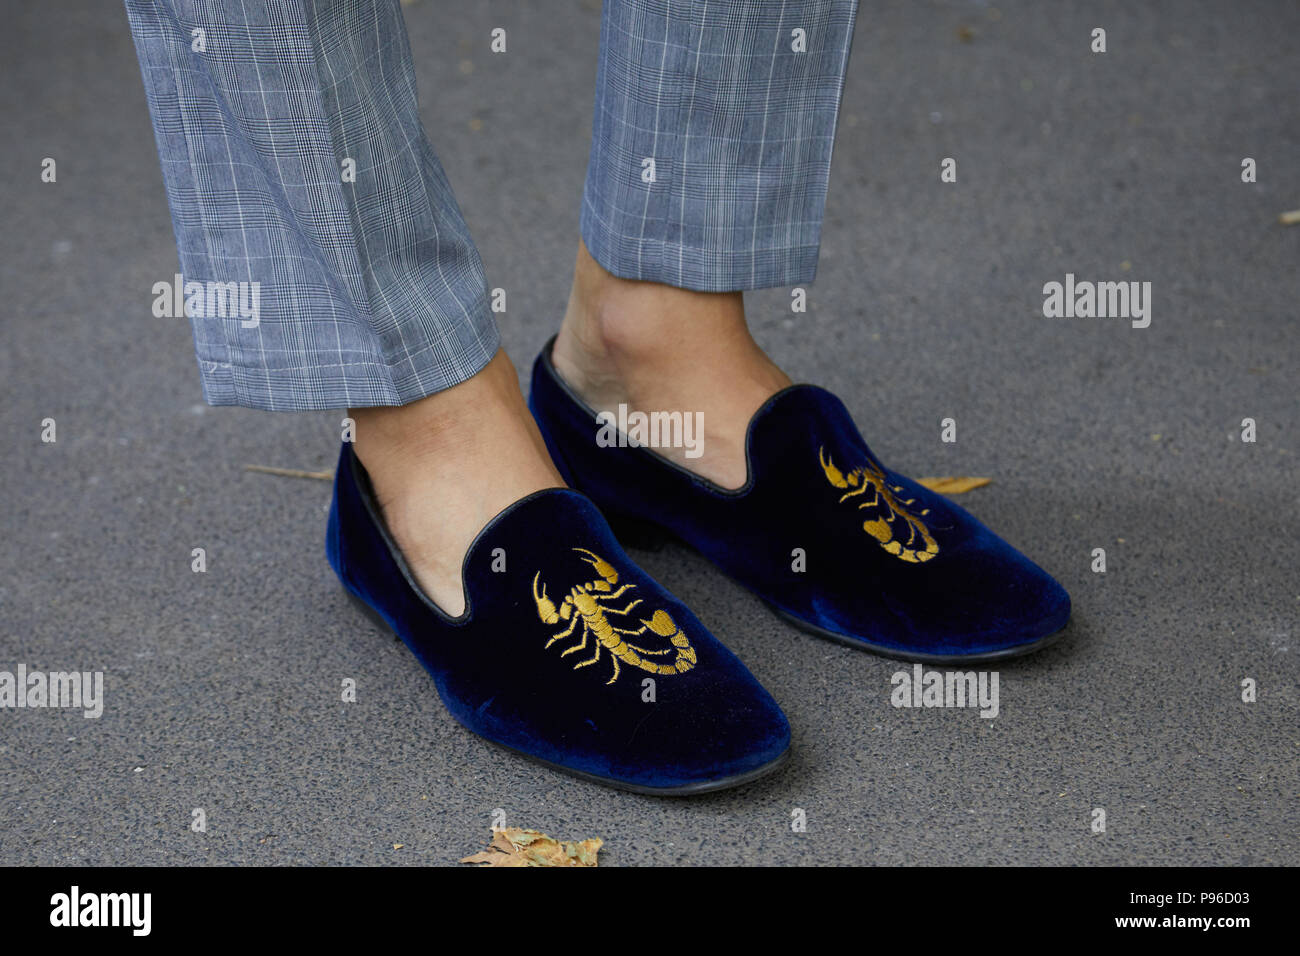 Sábana lengua Confrontar Milán - Junio 18: Hombre con zapatos de terciopelo azul con golden scorpion  diseño antes de Fendi